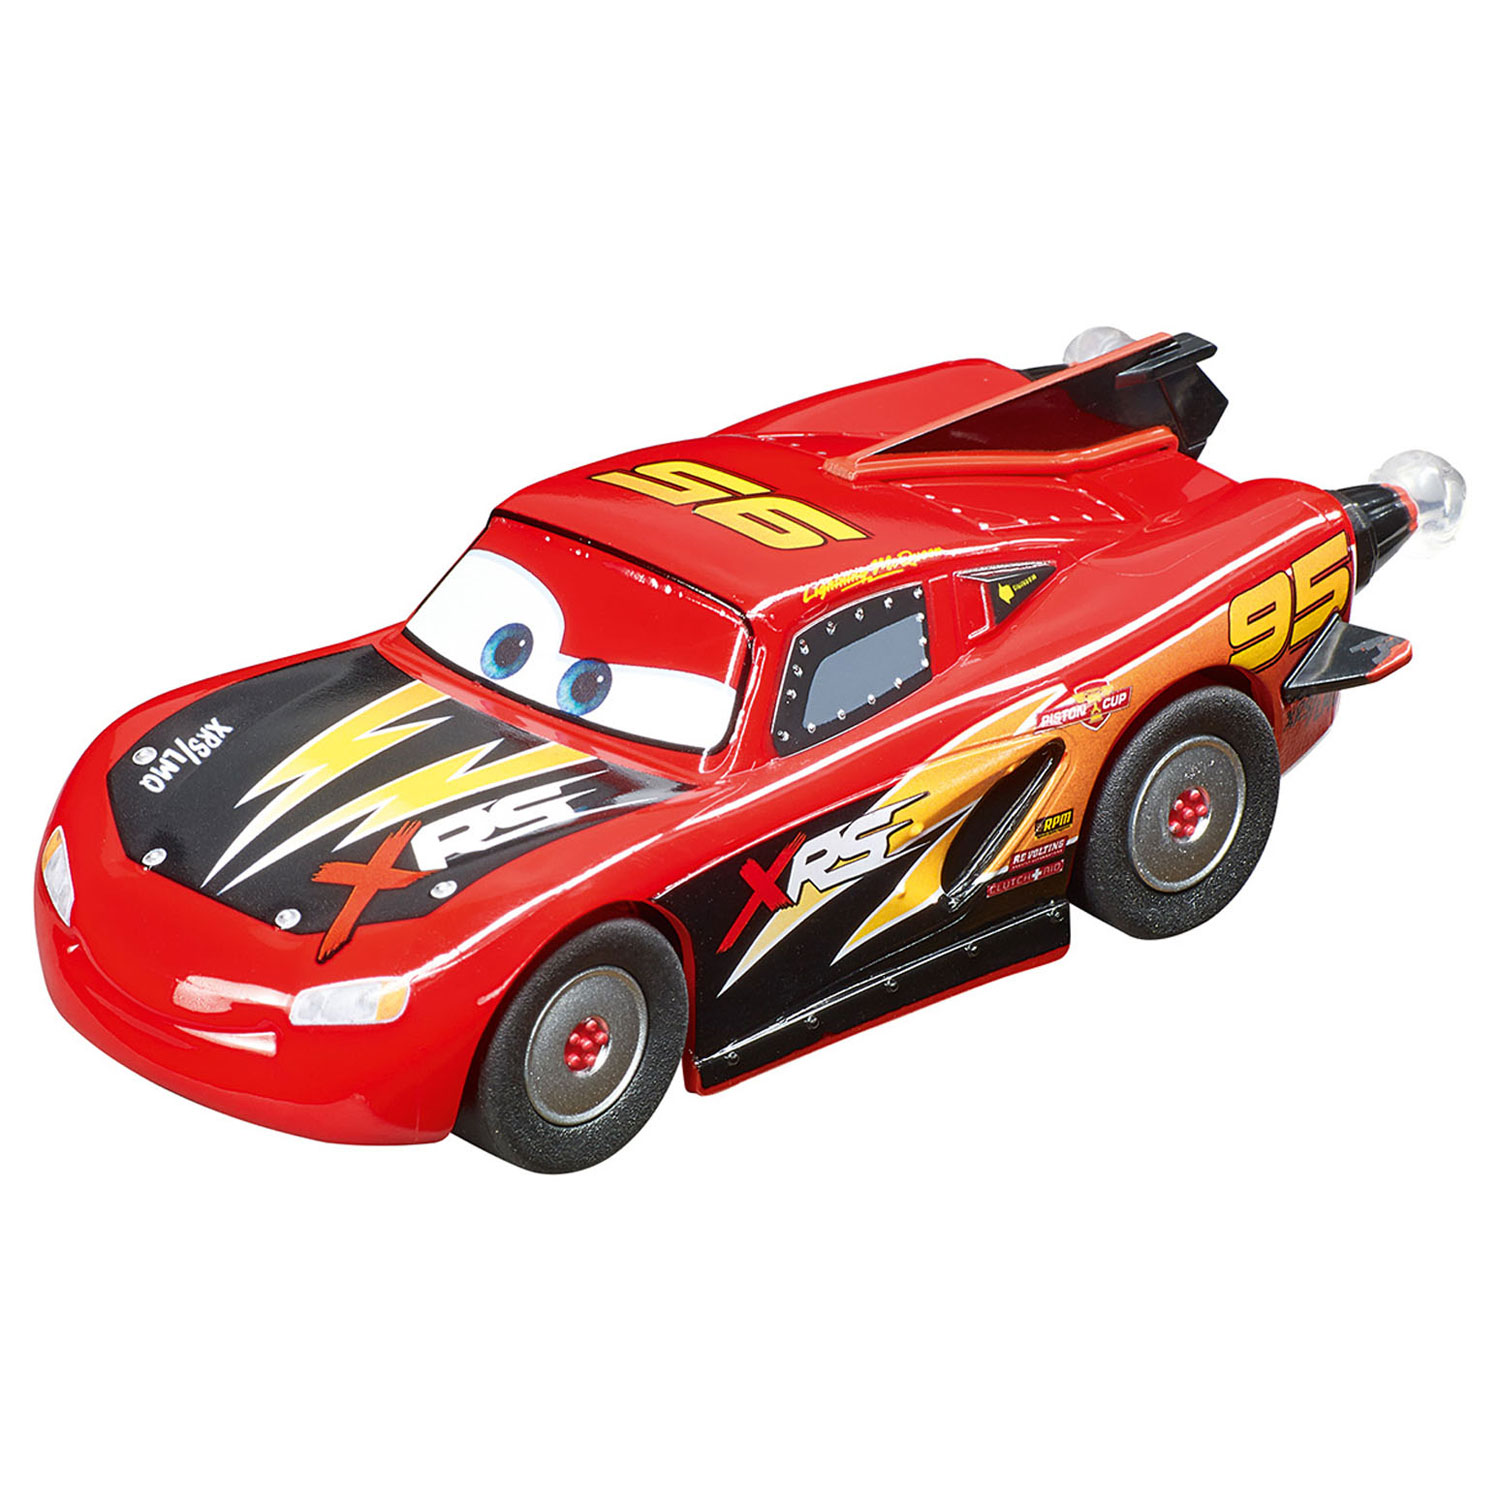 Carrera GO!!! Raceauto - Lightning McQueen Rocket Racer